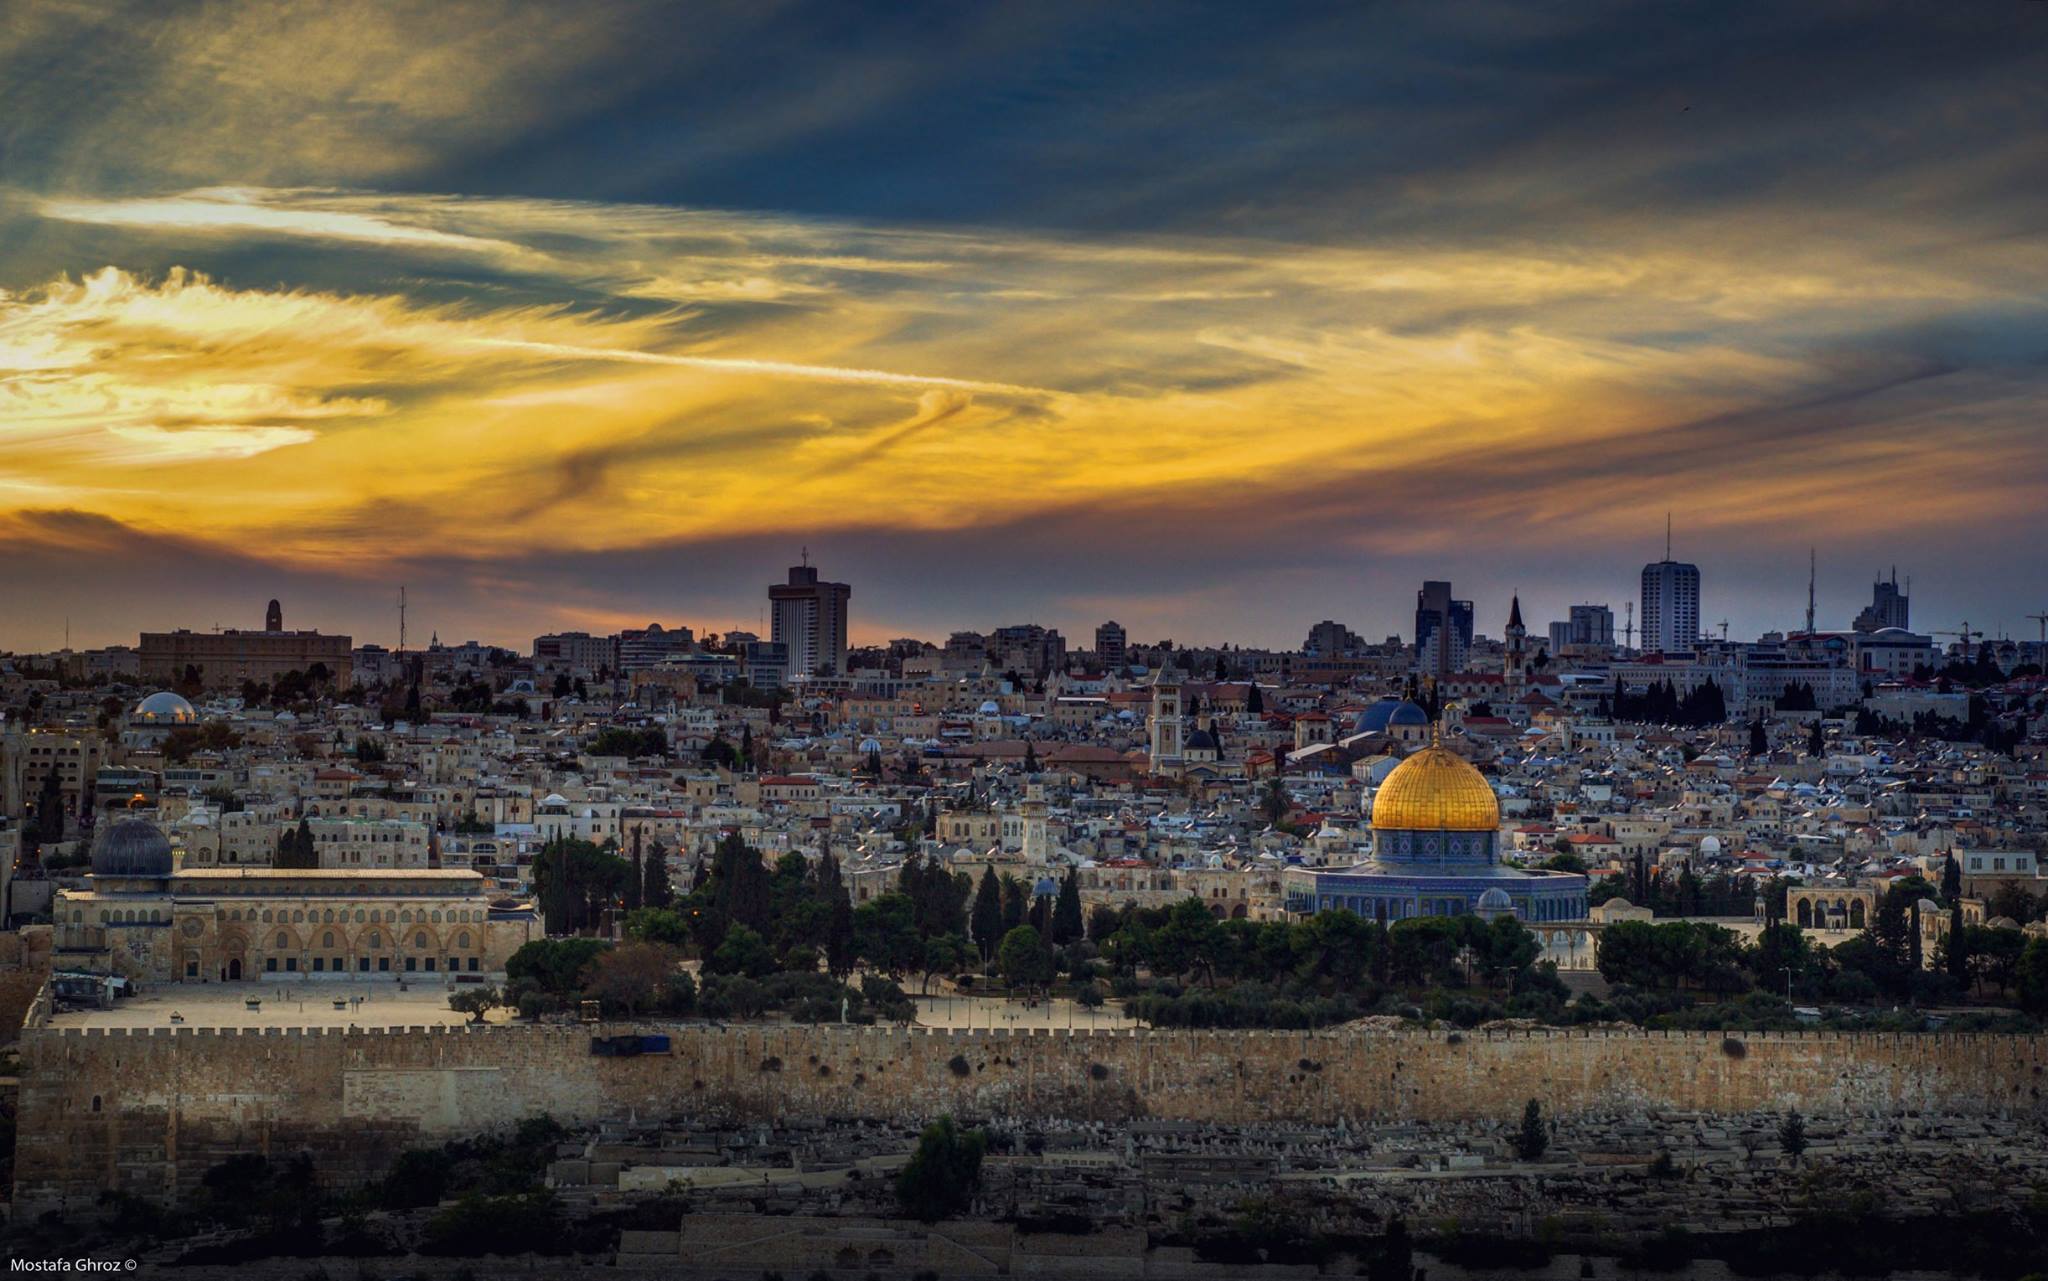   اليونيسكو تقرر.. إسرائيل دولة احتلال ويجب نزع سيادتها عن القدس